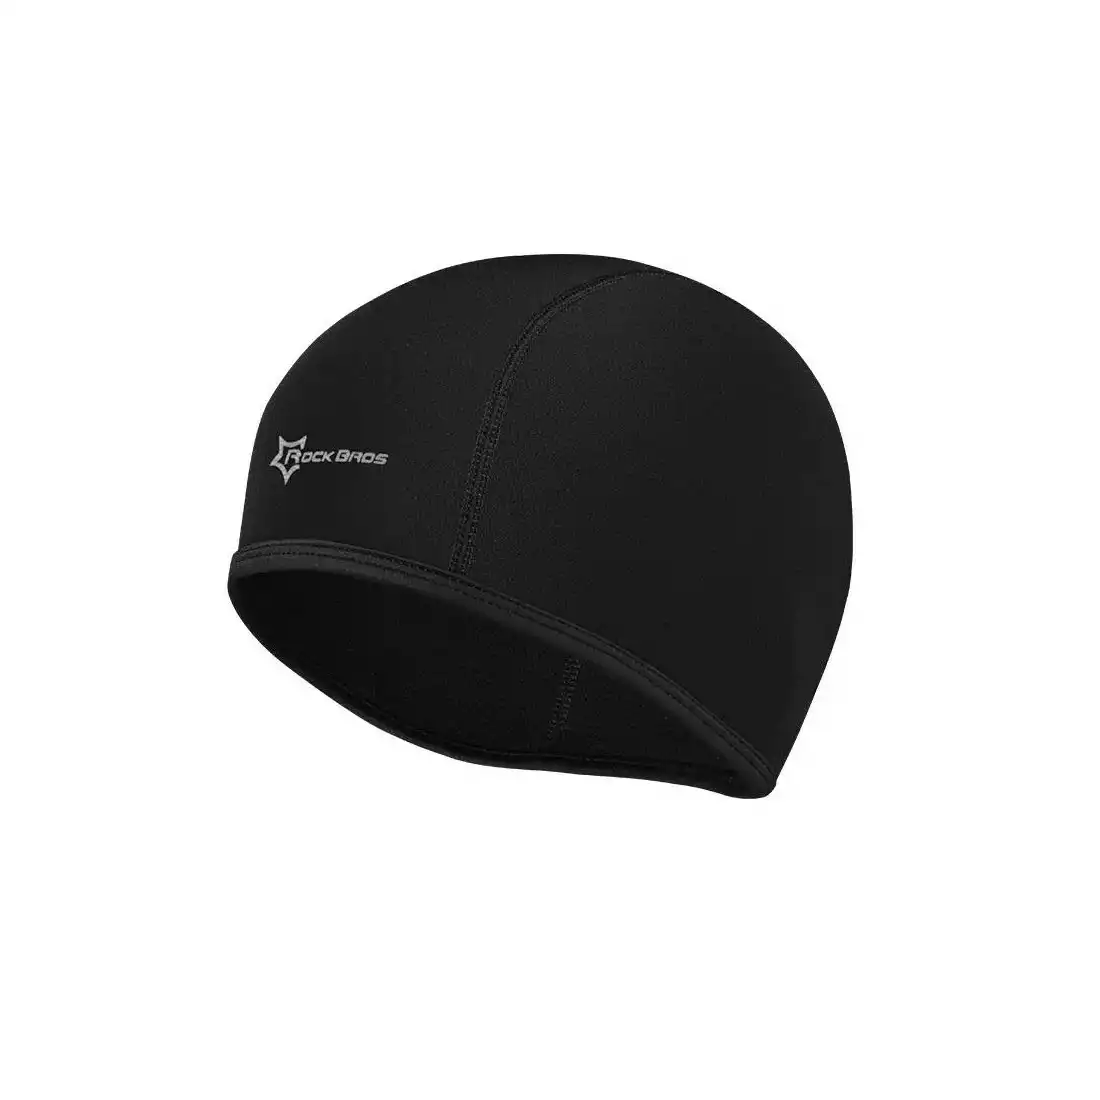 Rockbros czapka pod kask softshell czarna LF041BK